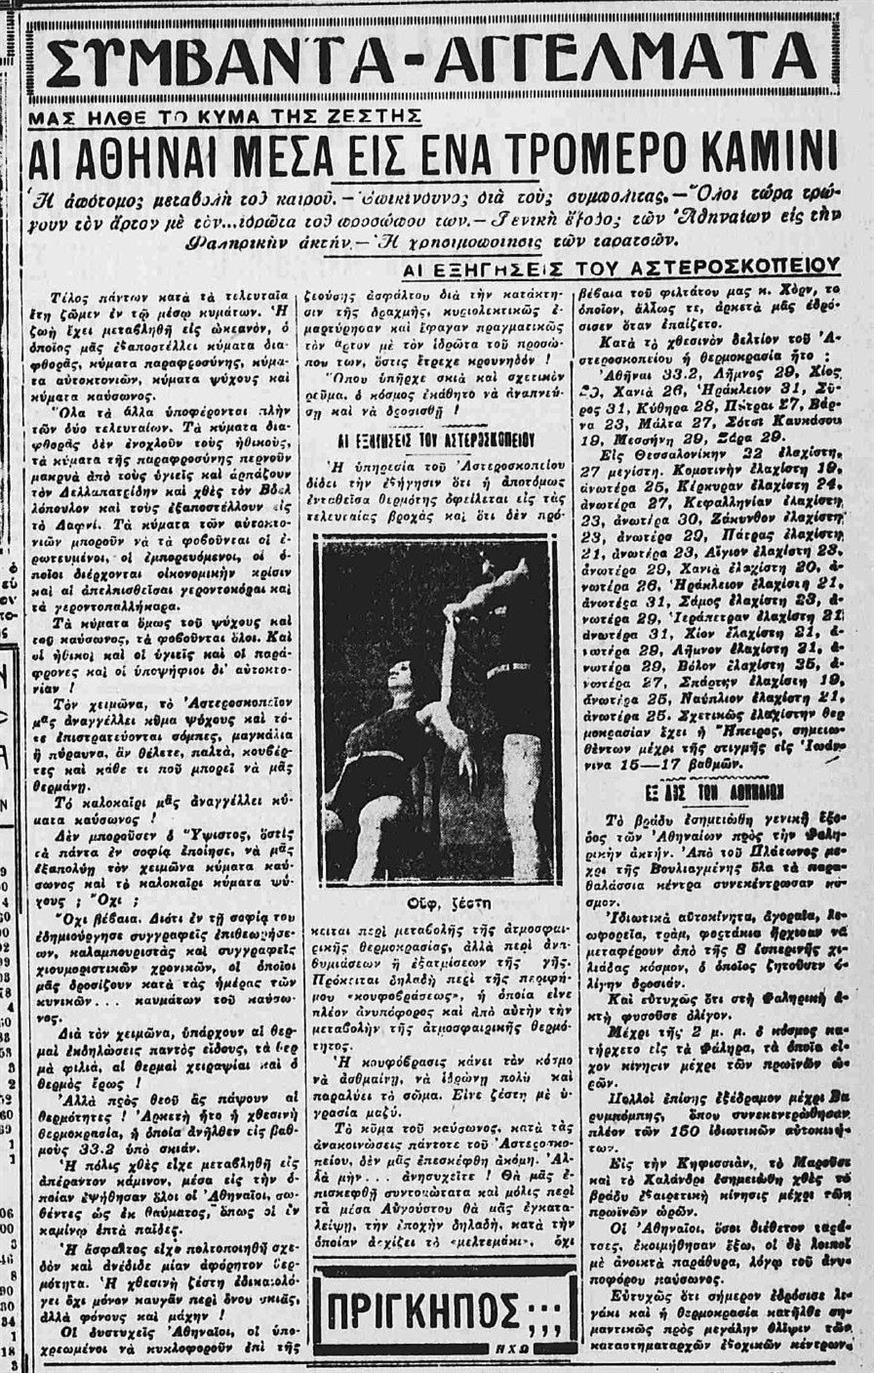 Το δημοσίευμα της εφημερίδας «Εμπρος» στις 11 Ιουλίου 1930 αναφέρει για θερμοκρασία 33,2 βαθμοί που έκαναν καμίνι την Αθήνα